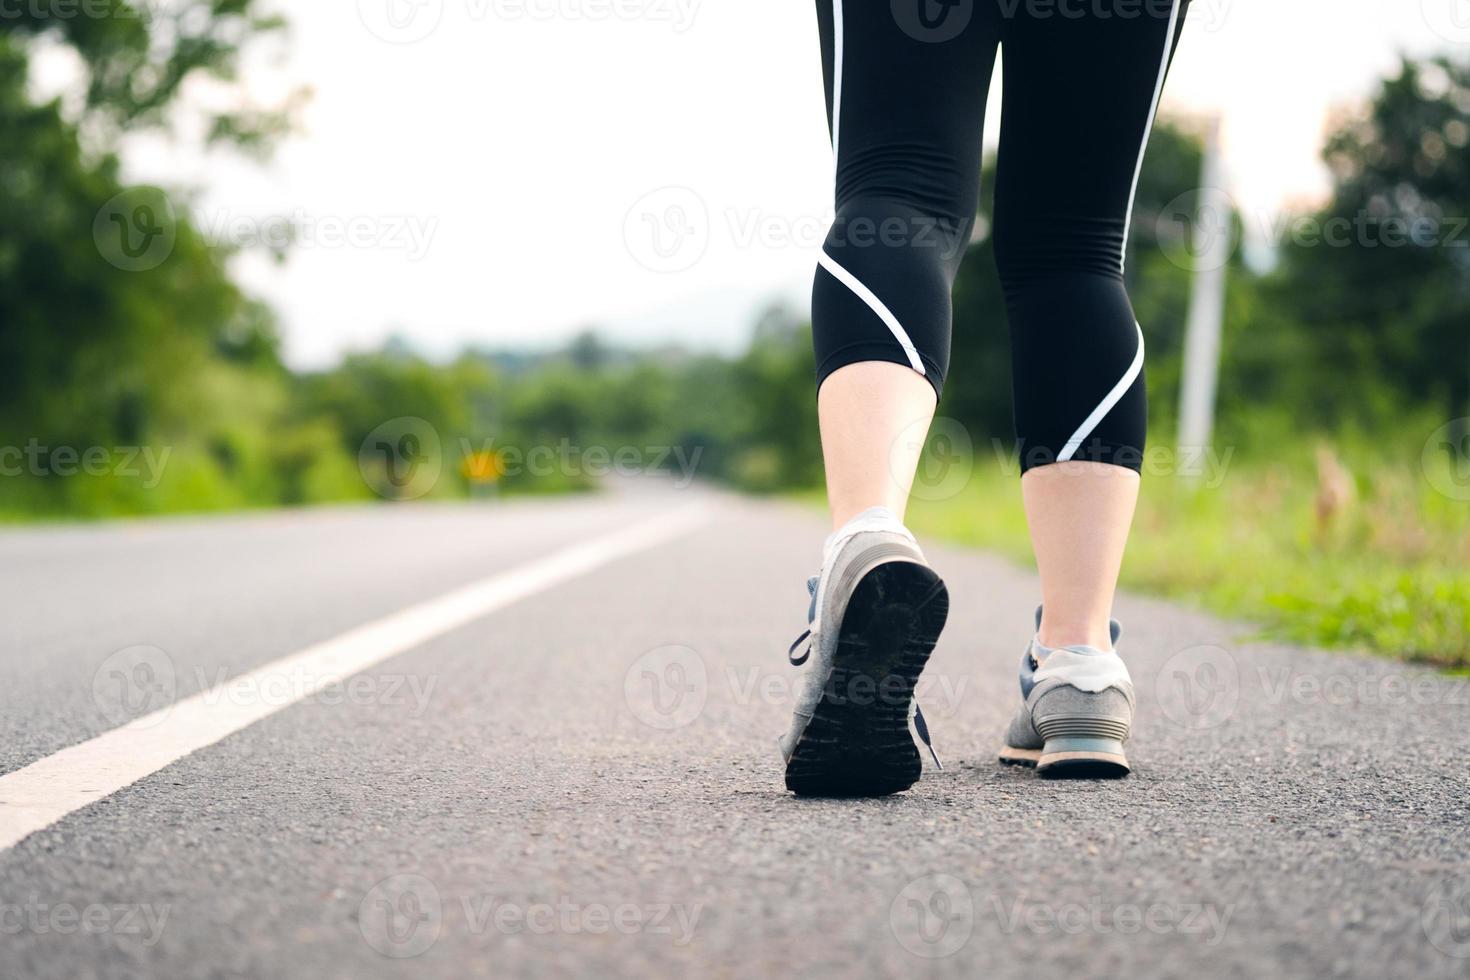 las mujeres jóvenes se paran para prepararse para caminar o trotar en un camino rural. vista posterior de las piernas femeninas. concepto de cuidado de la salud con ejercicio. foto